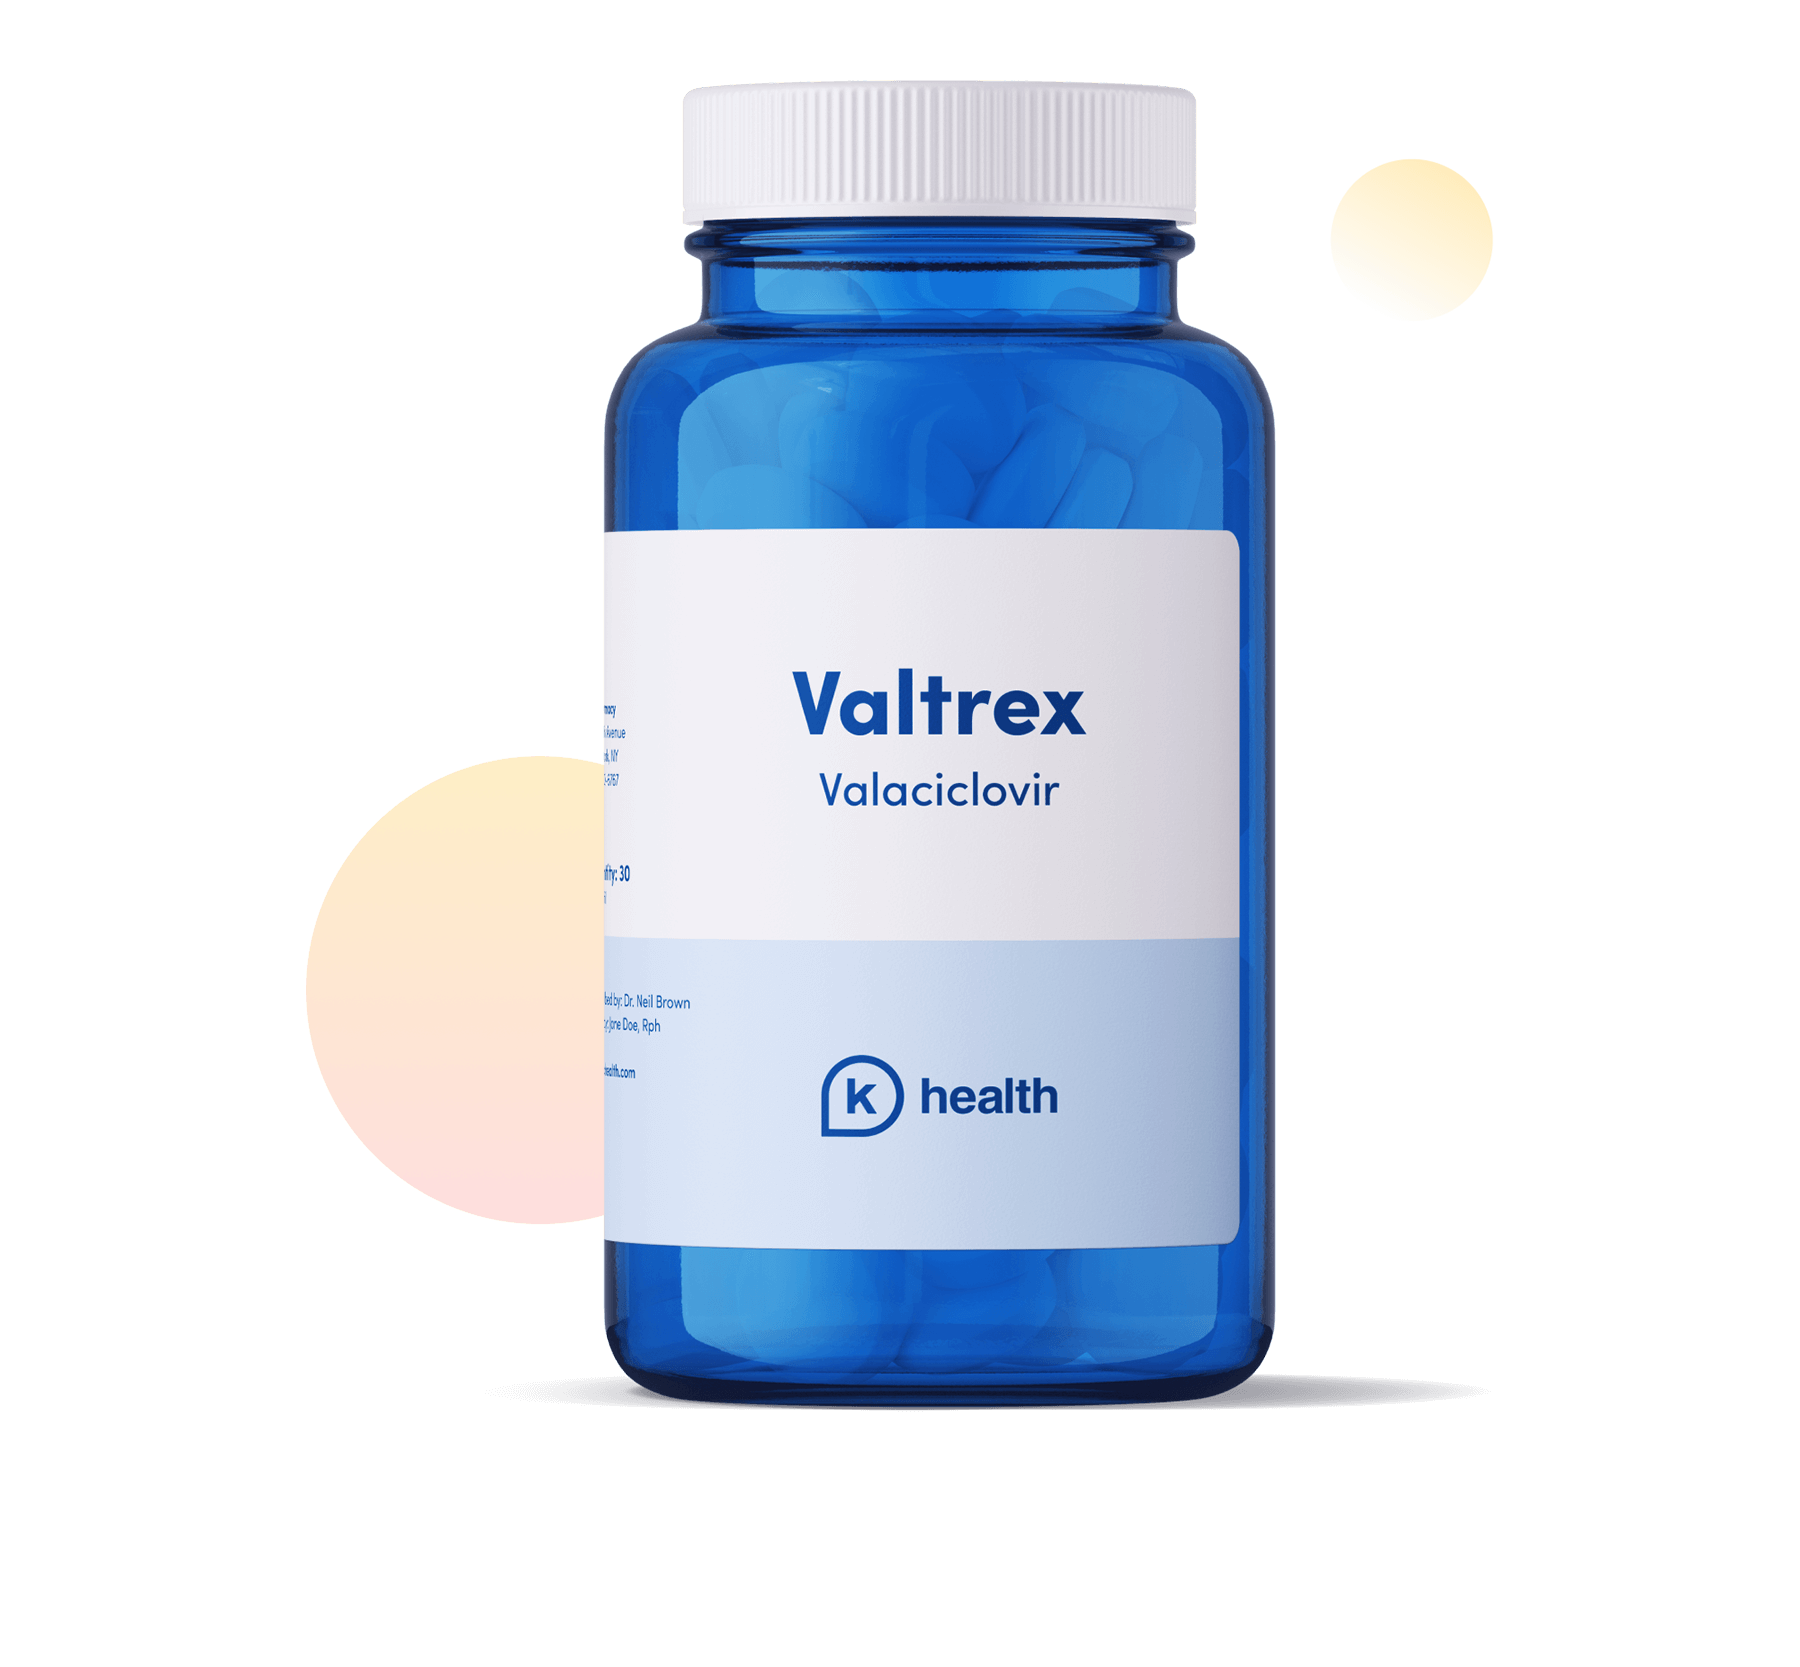 Valtrex drug Bottle